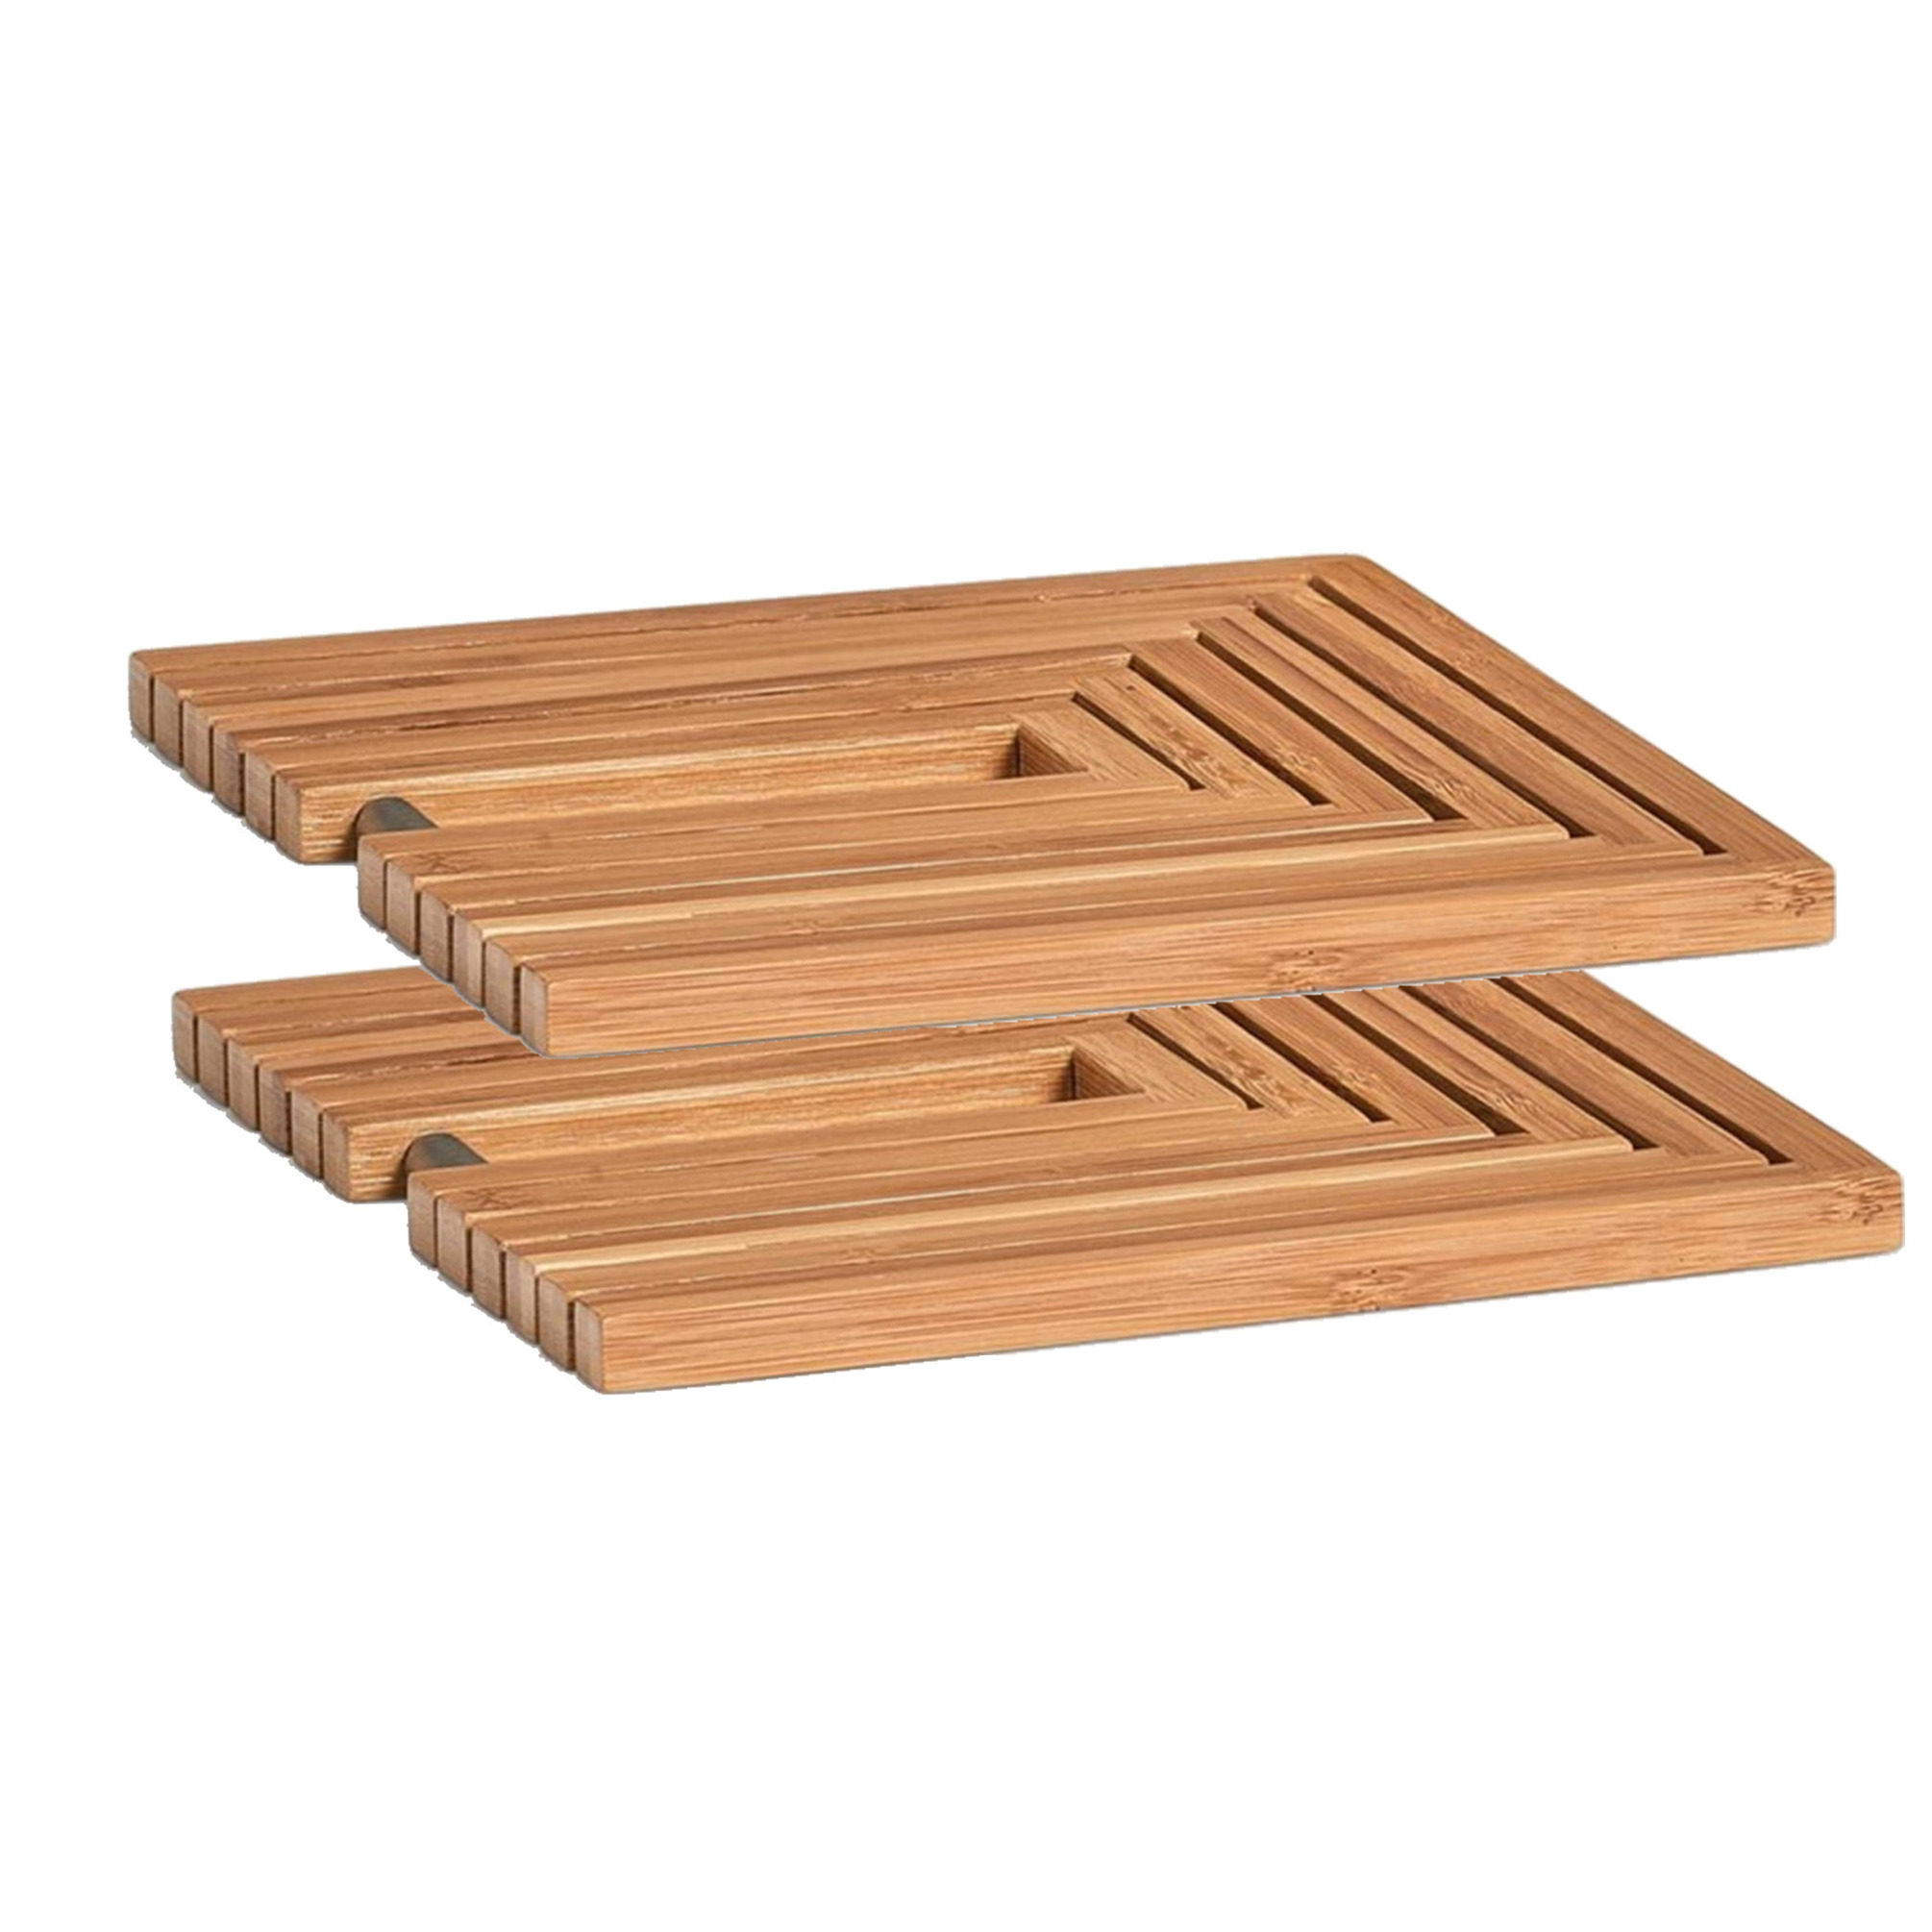 2x Bamboe houten pannenonderzetters uitklapbaar 19-34 x 19 cm